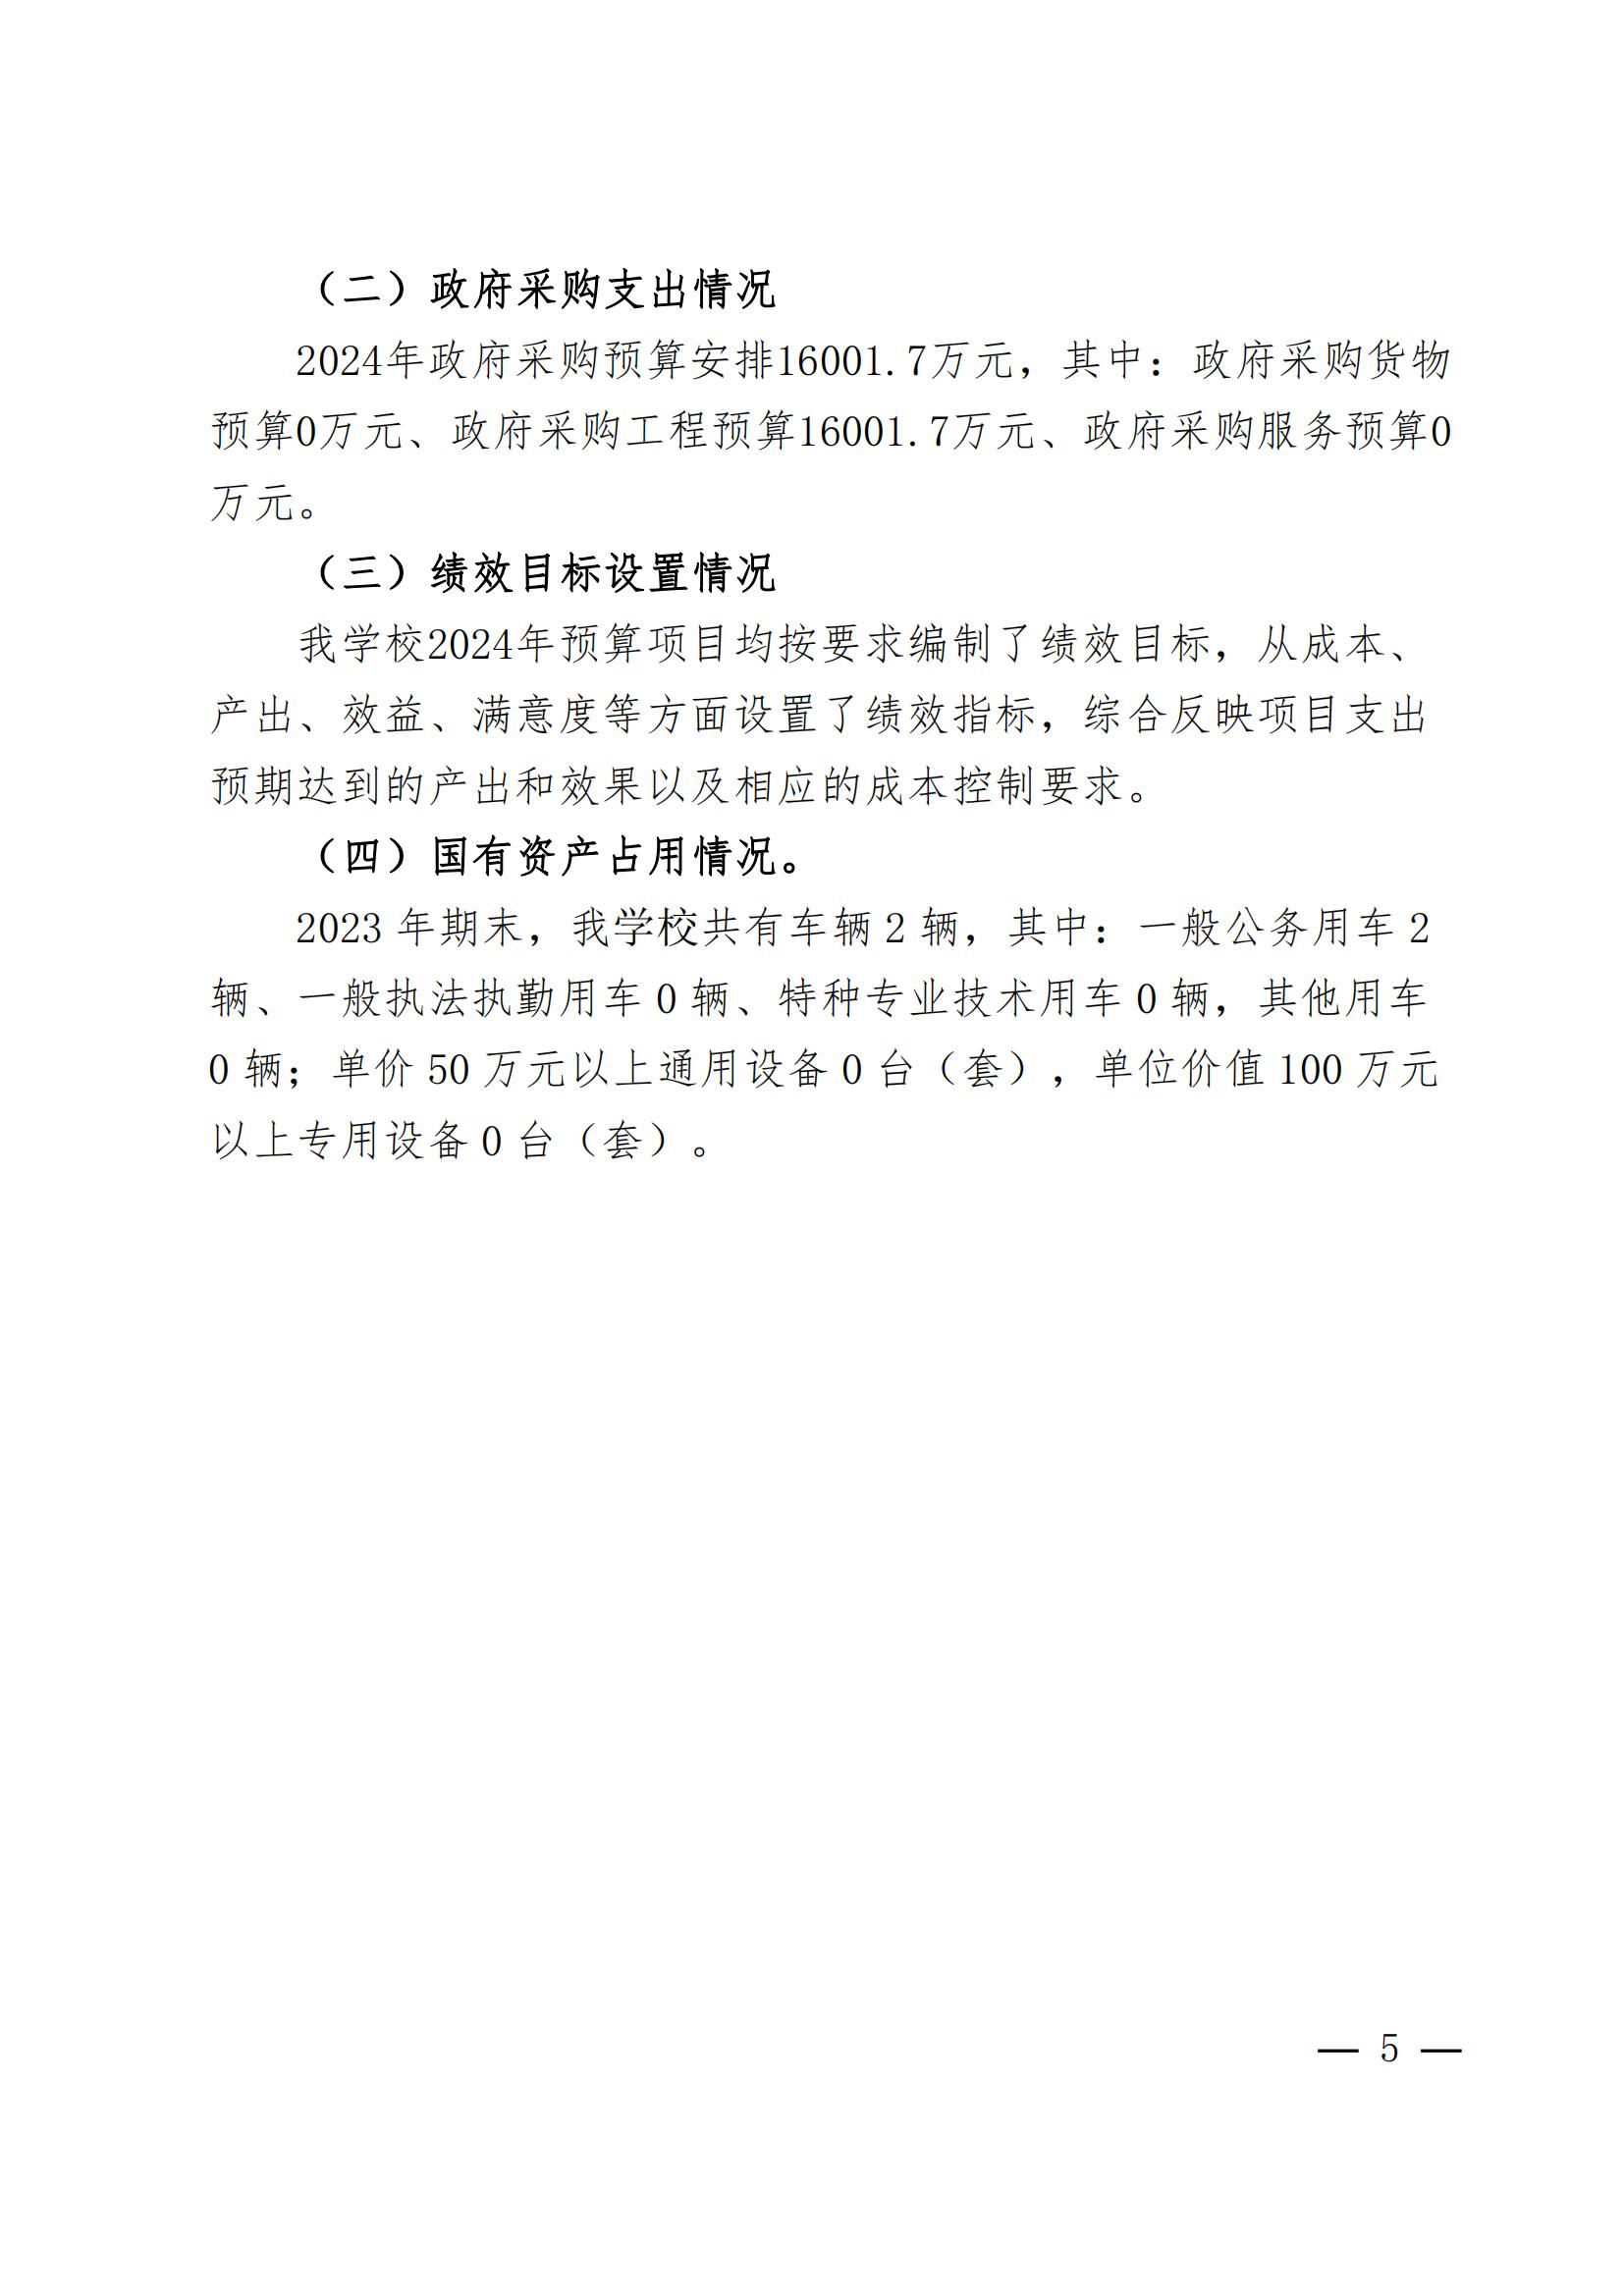 河南省民政学校2024年部门预算公开(1)_04.jpg